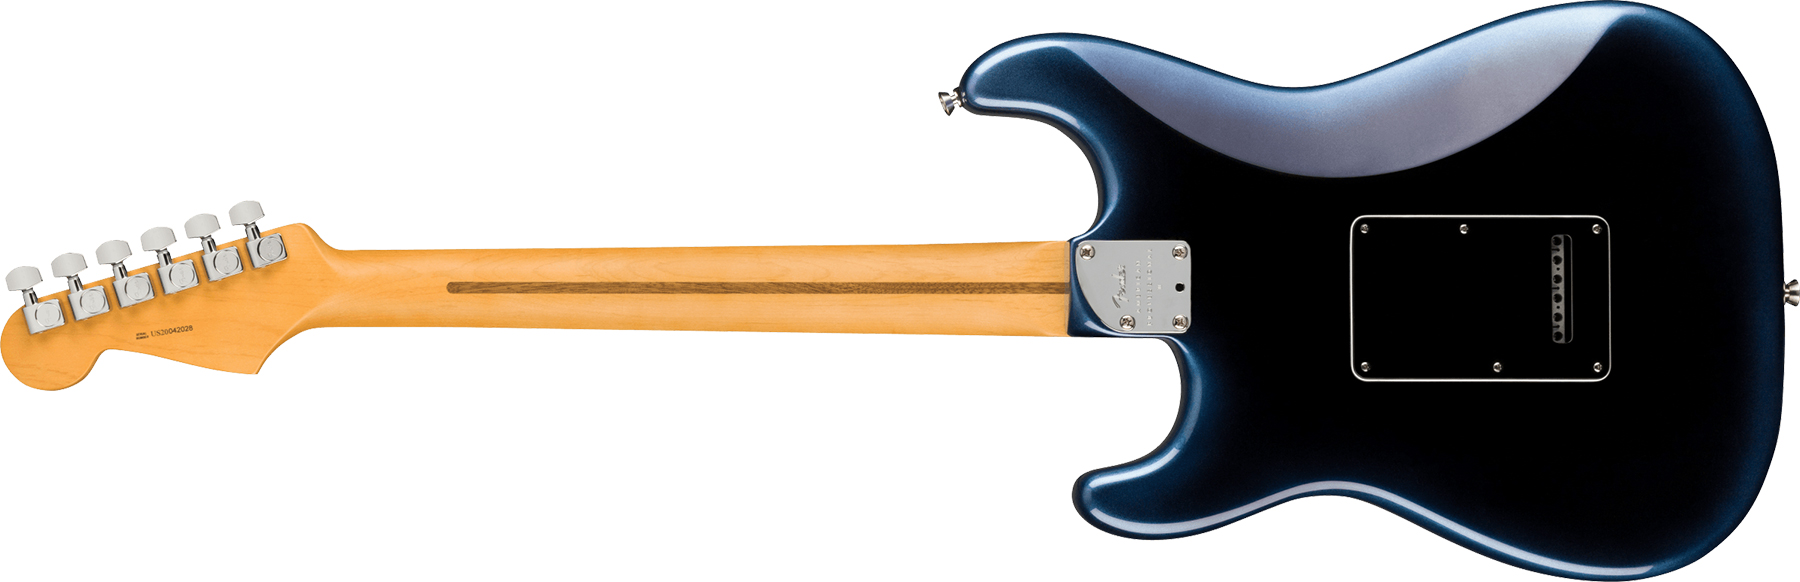 Fender Strat American Professional Ii Usa Rw - Dark Night - Elektrische gitaar in Str-vorm - Variation 1